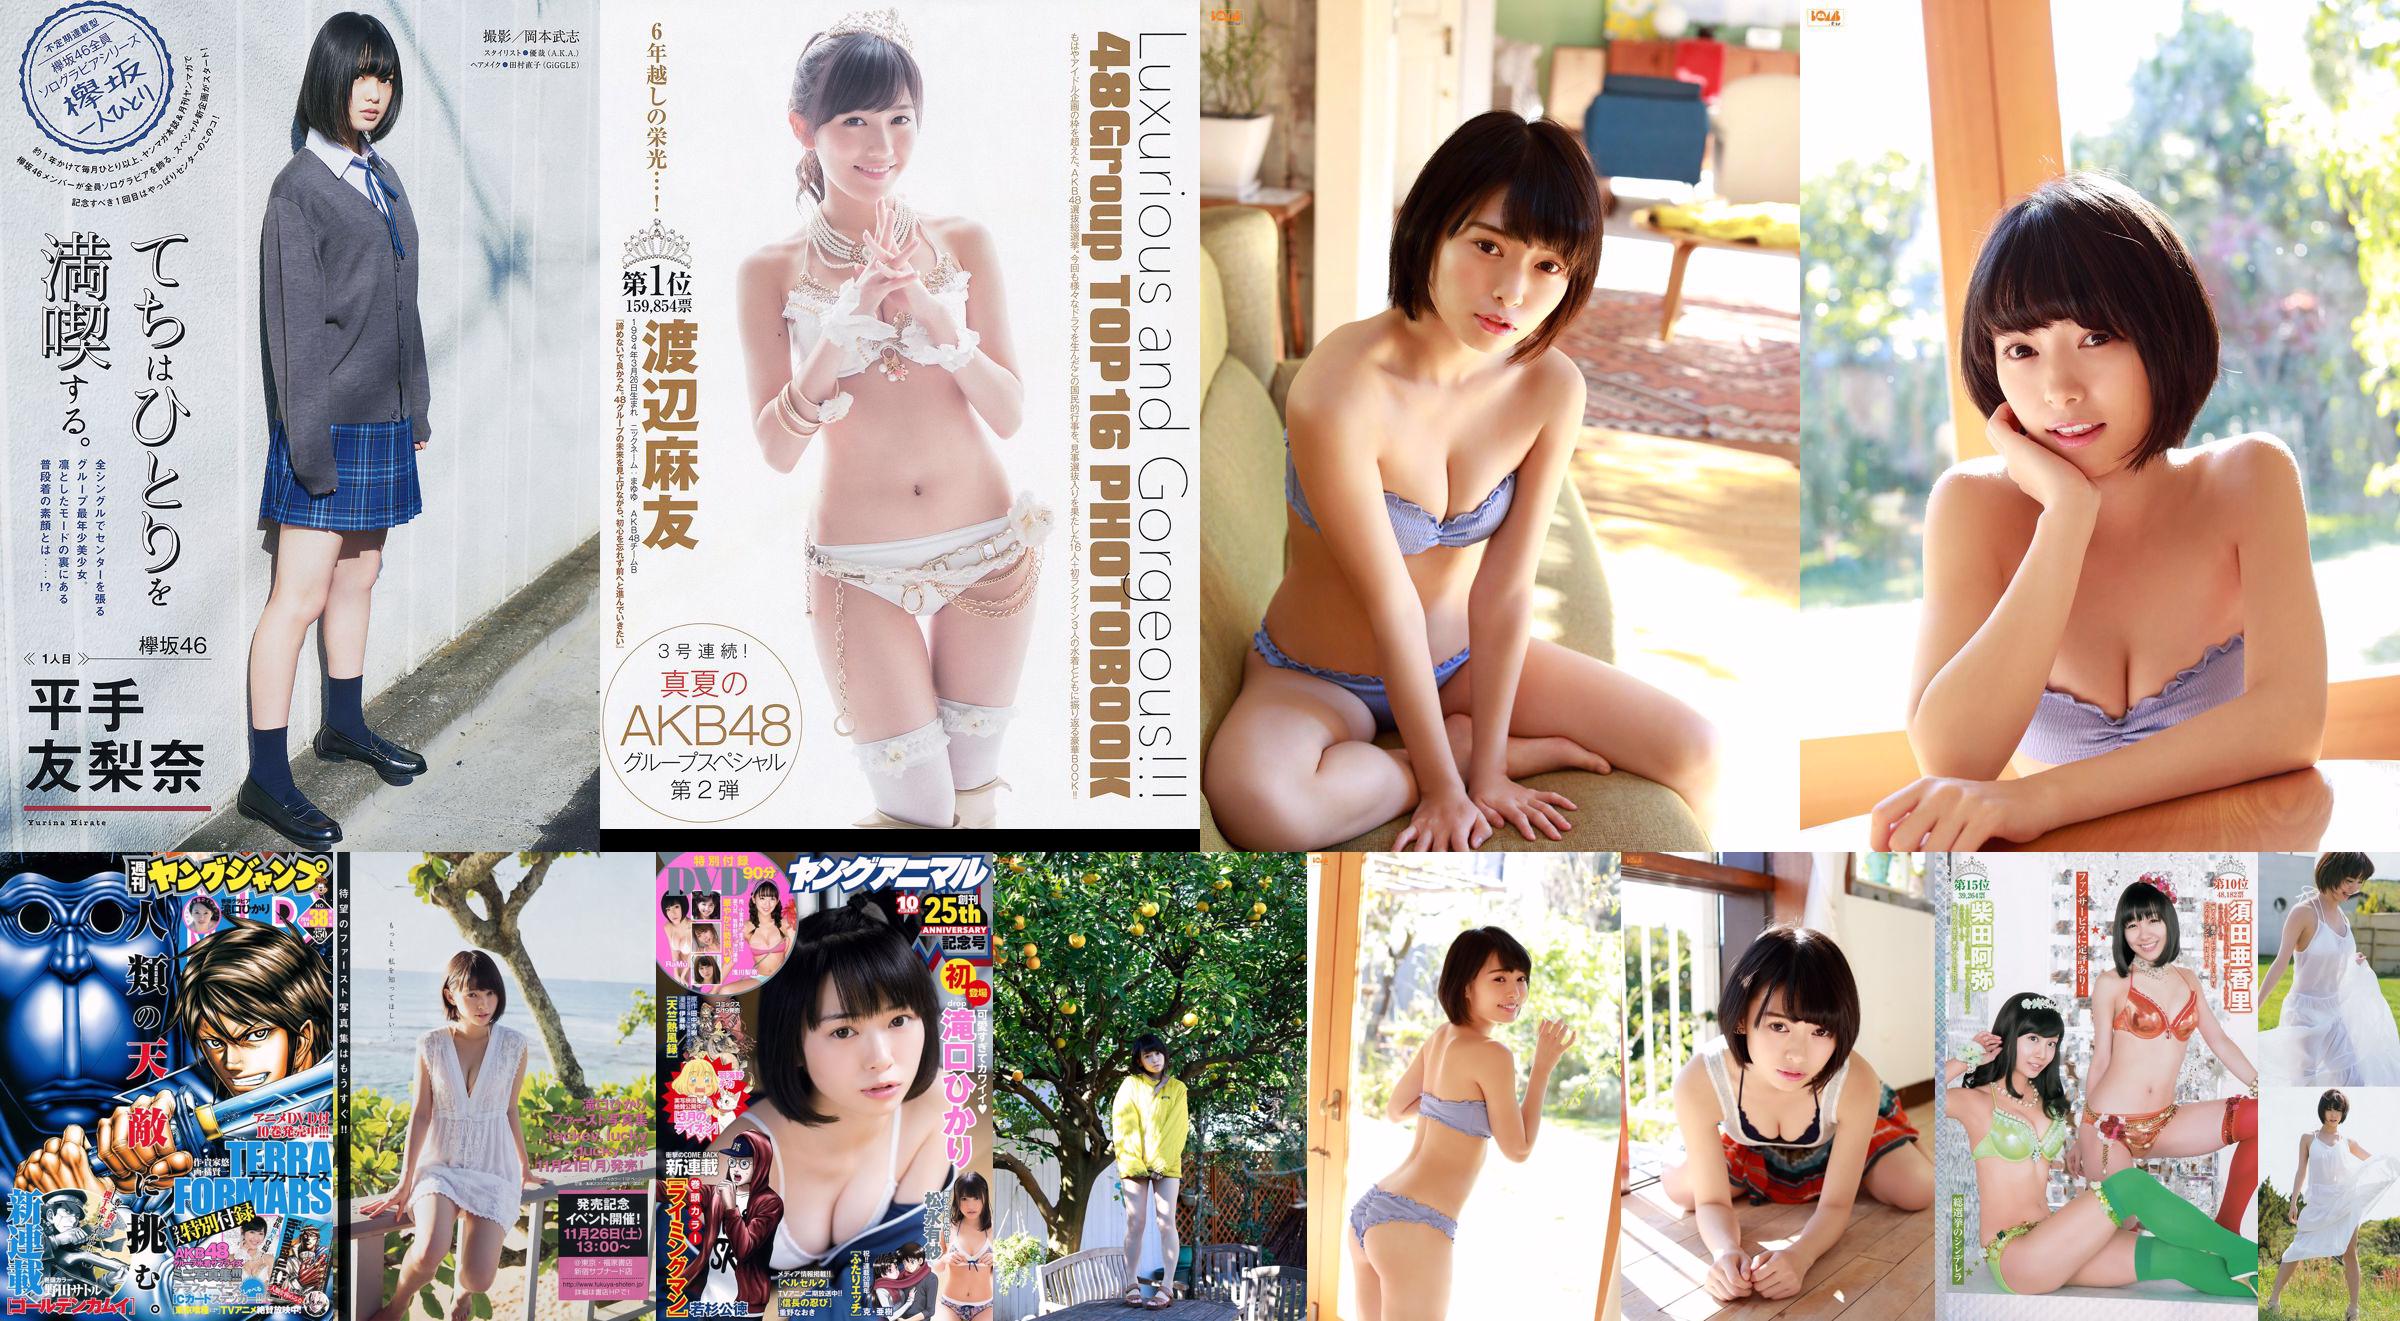 Hikari Takiguchi Hinako Kinoshita AKB48 Nonoka Ono [Tygodniowy młody skok] 2014 No.38 Photo No.f89fbd Strona 1